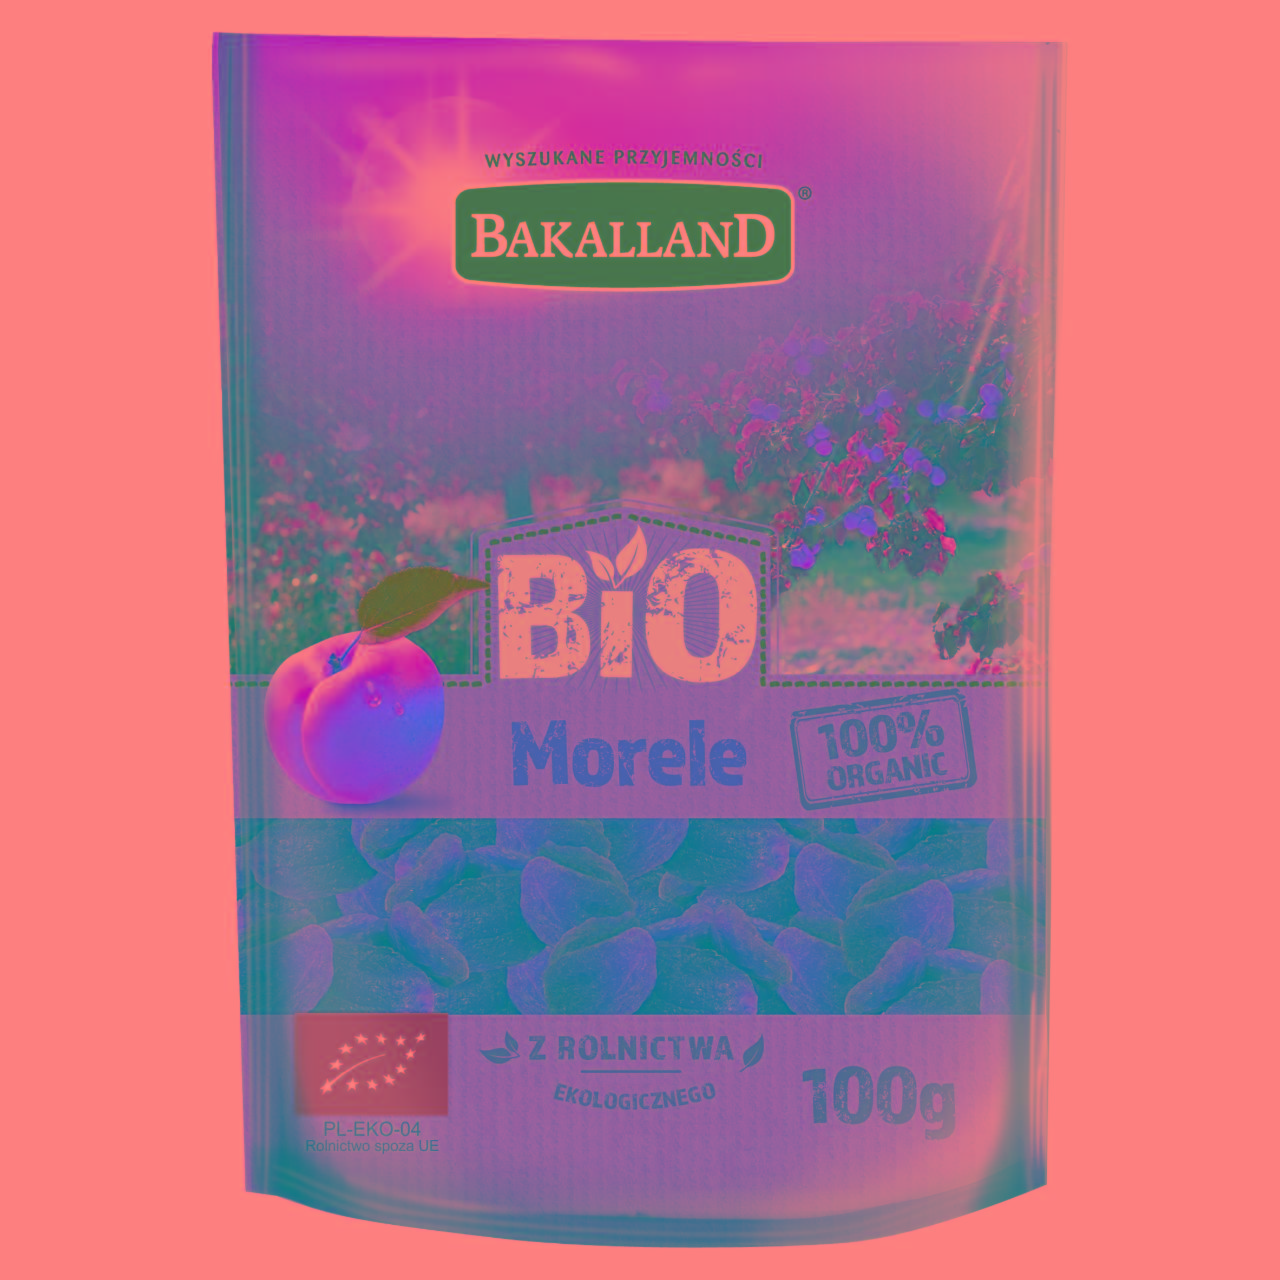 Zdjęcia - Bakalland Bio morele100 g